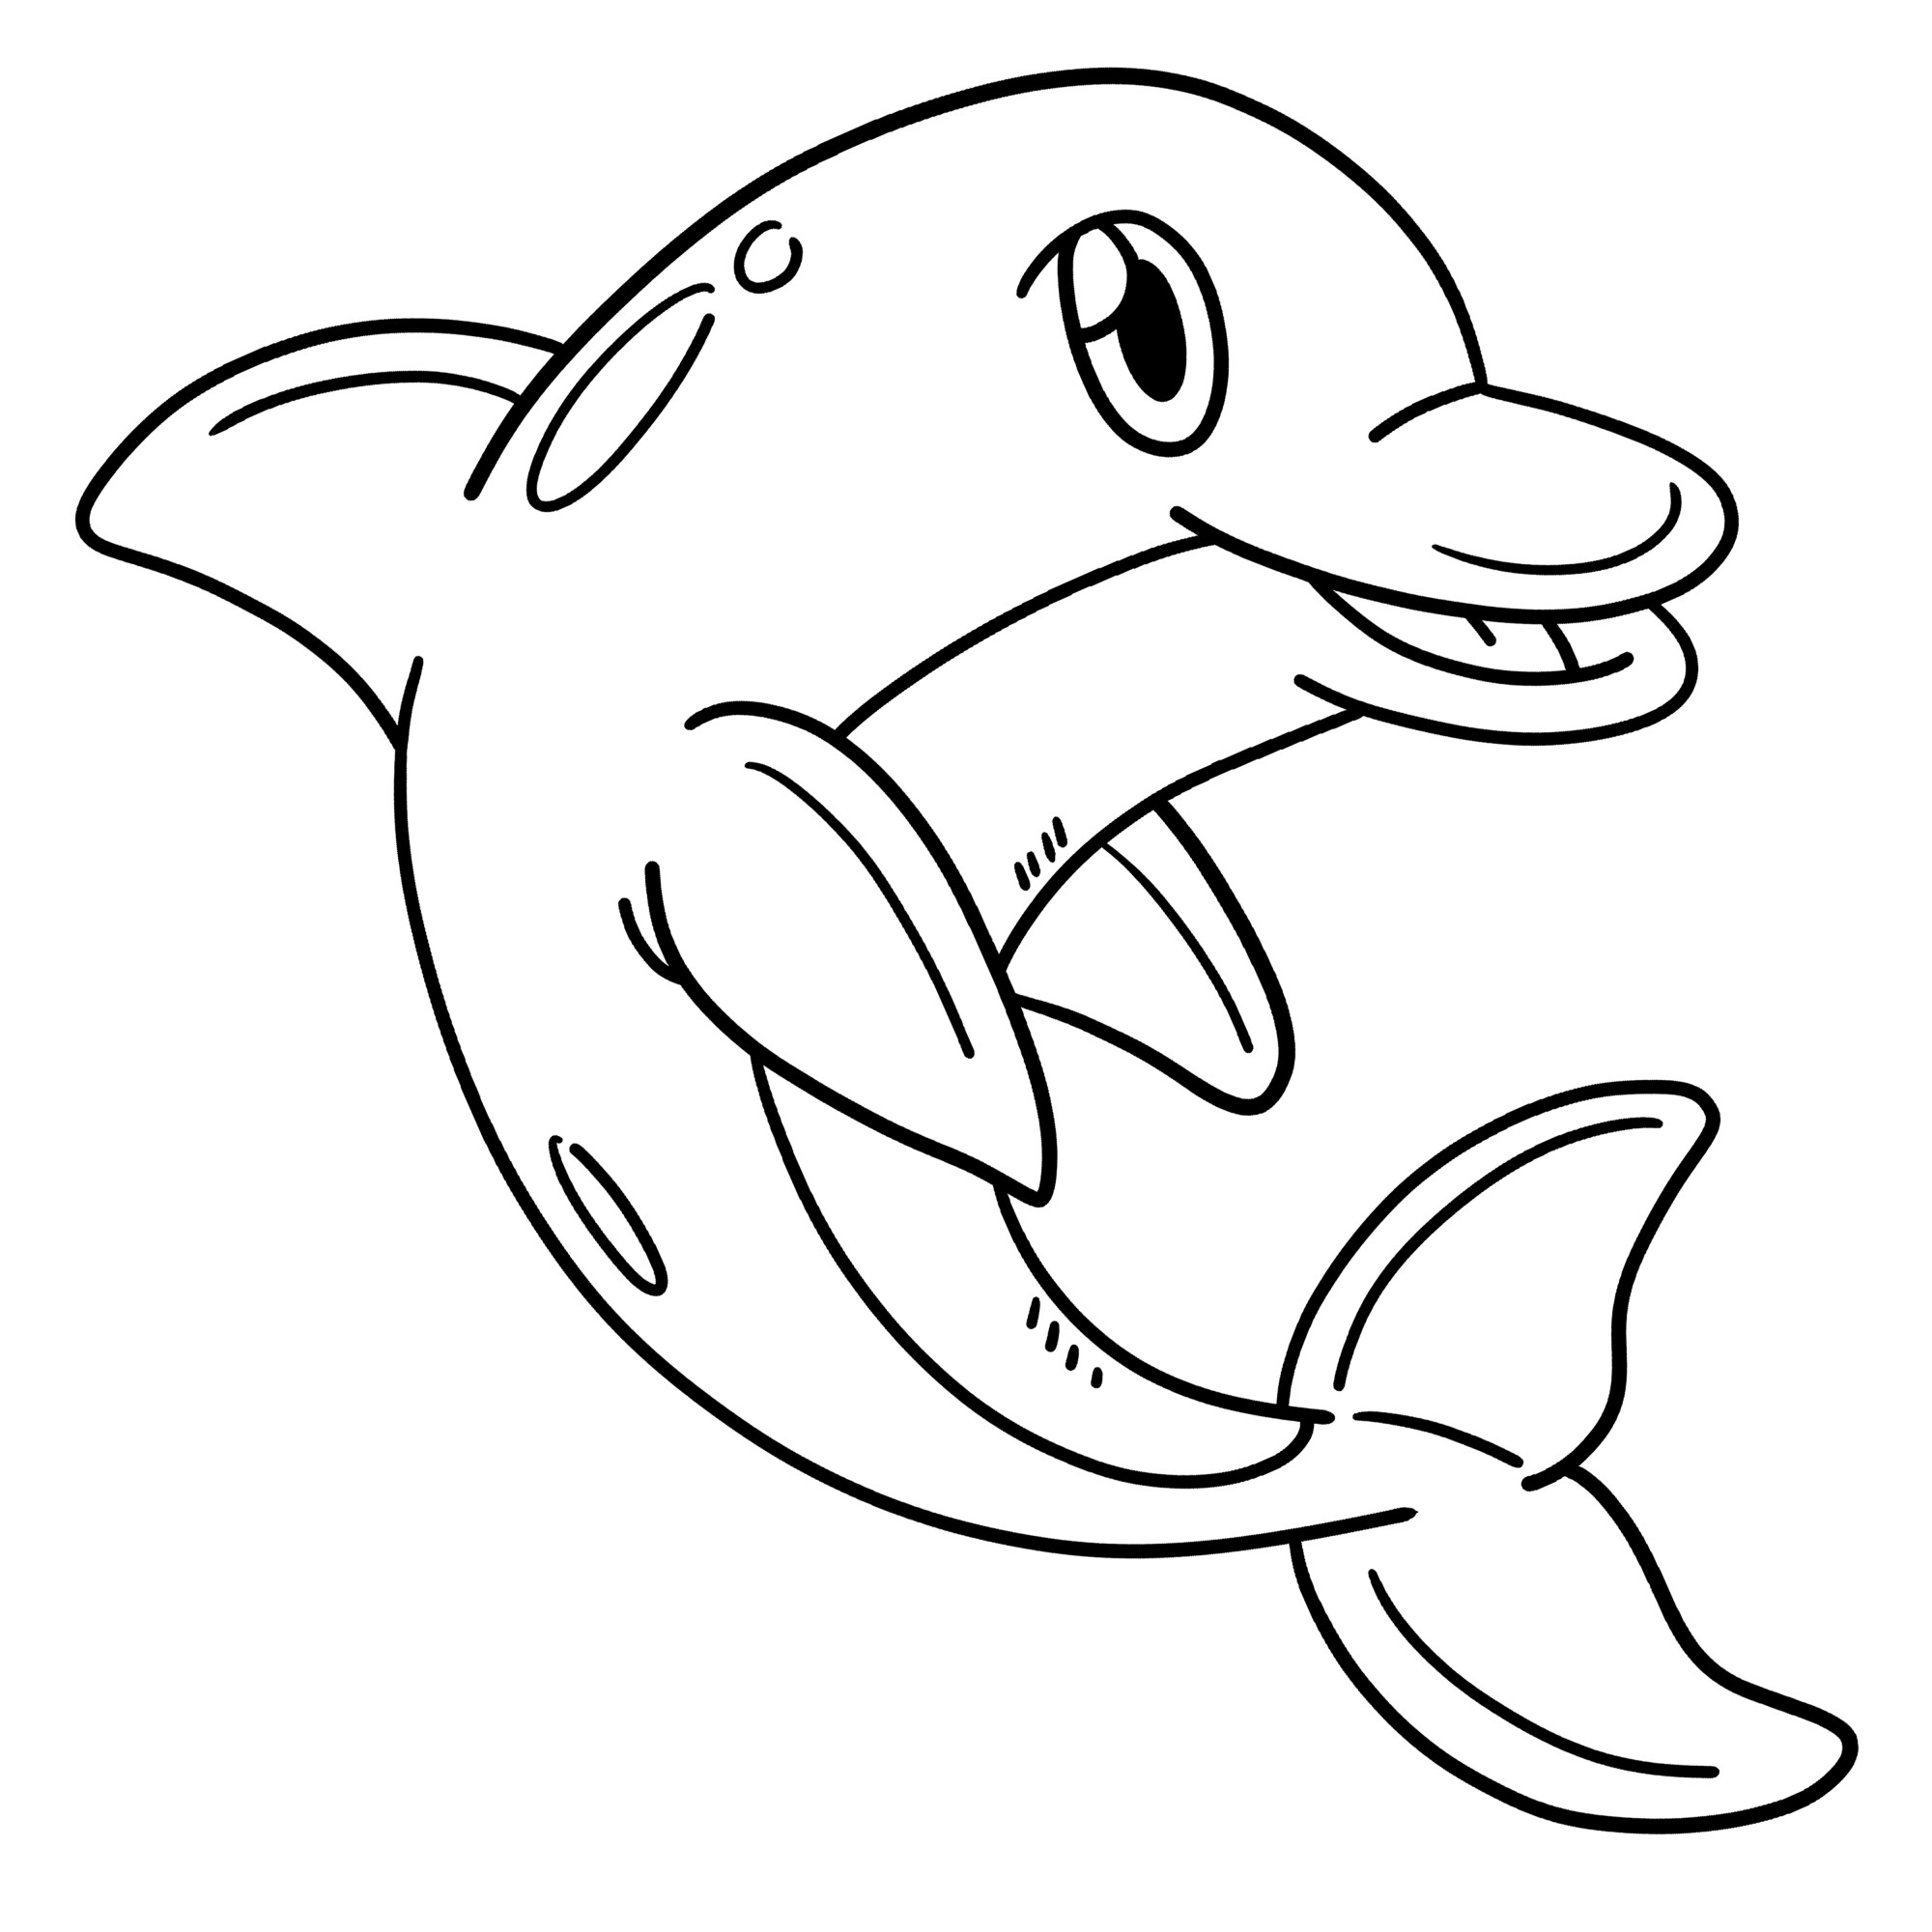 Раскраска для детей: дельфин с улыбкой и красивым хвостом